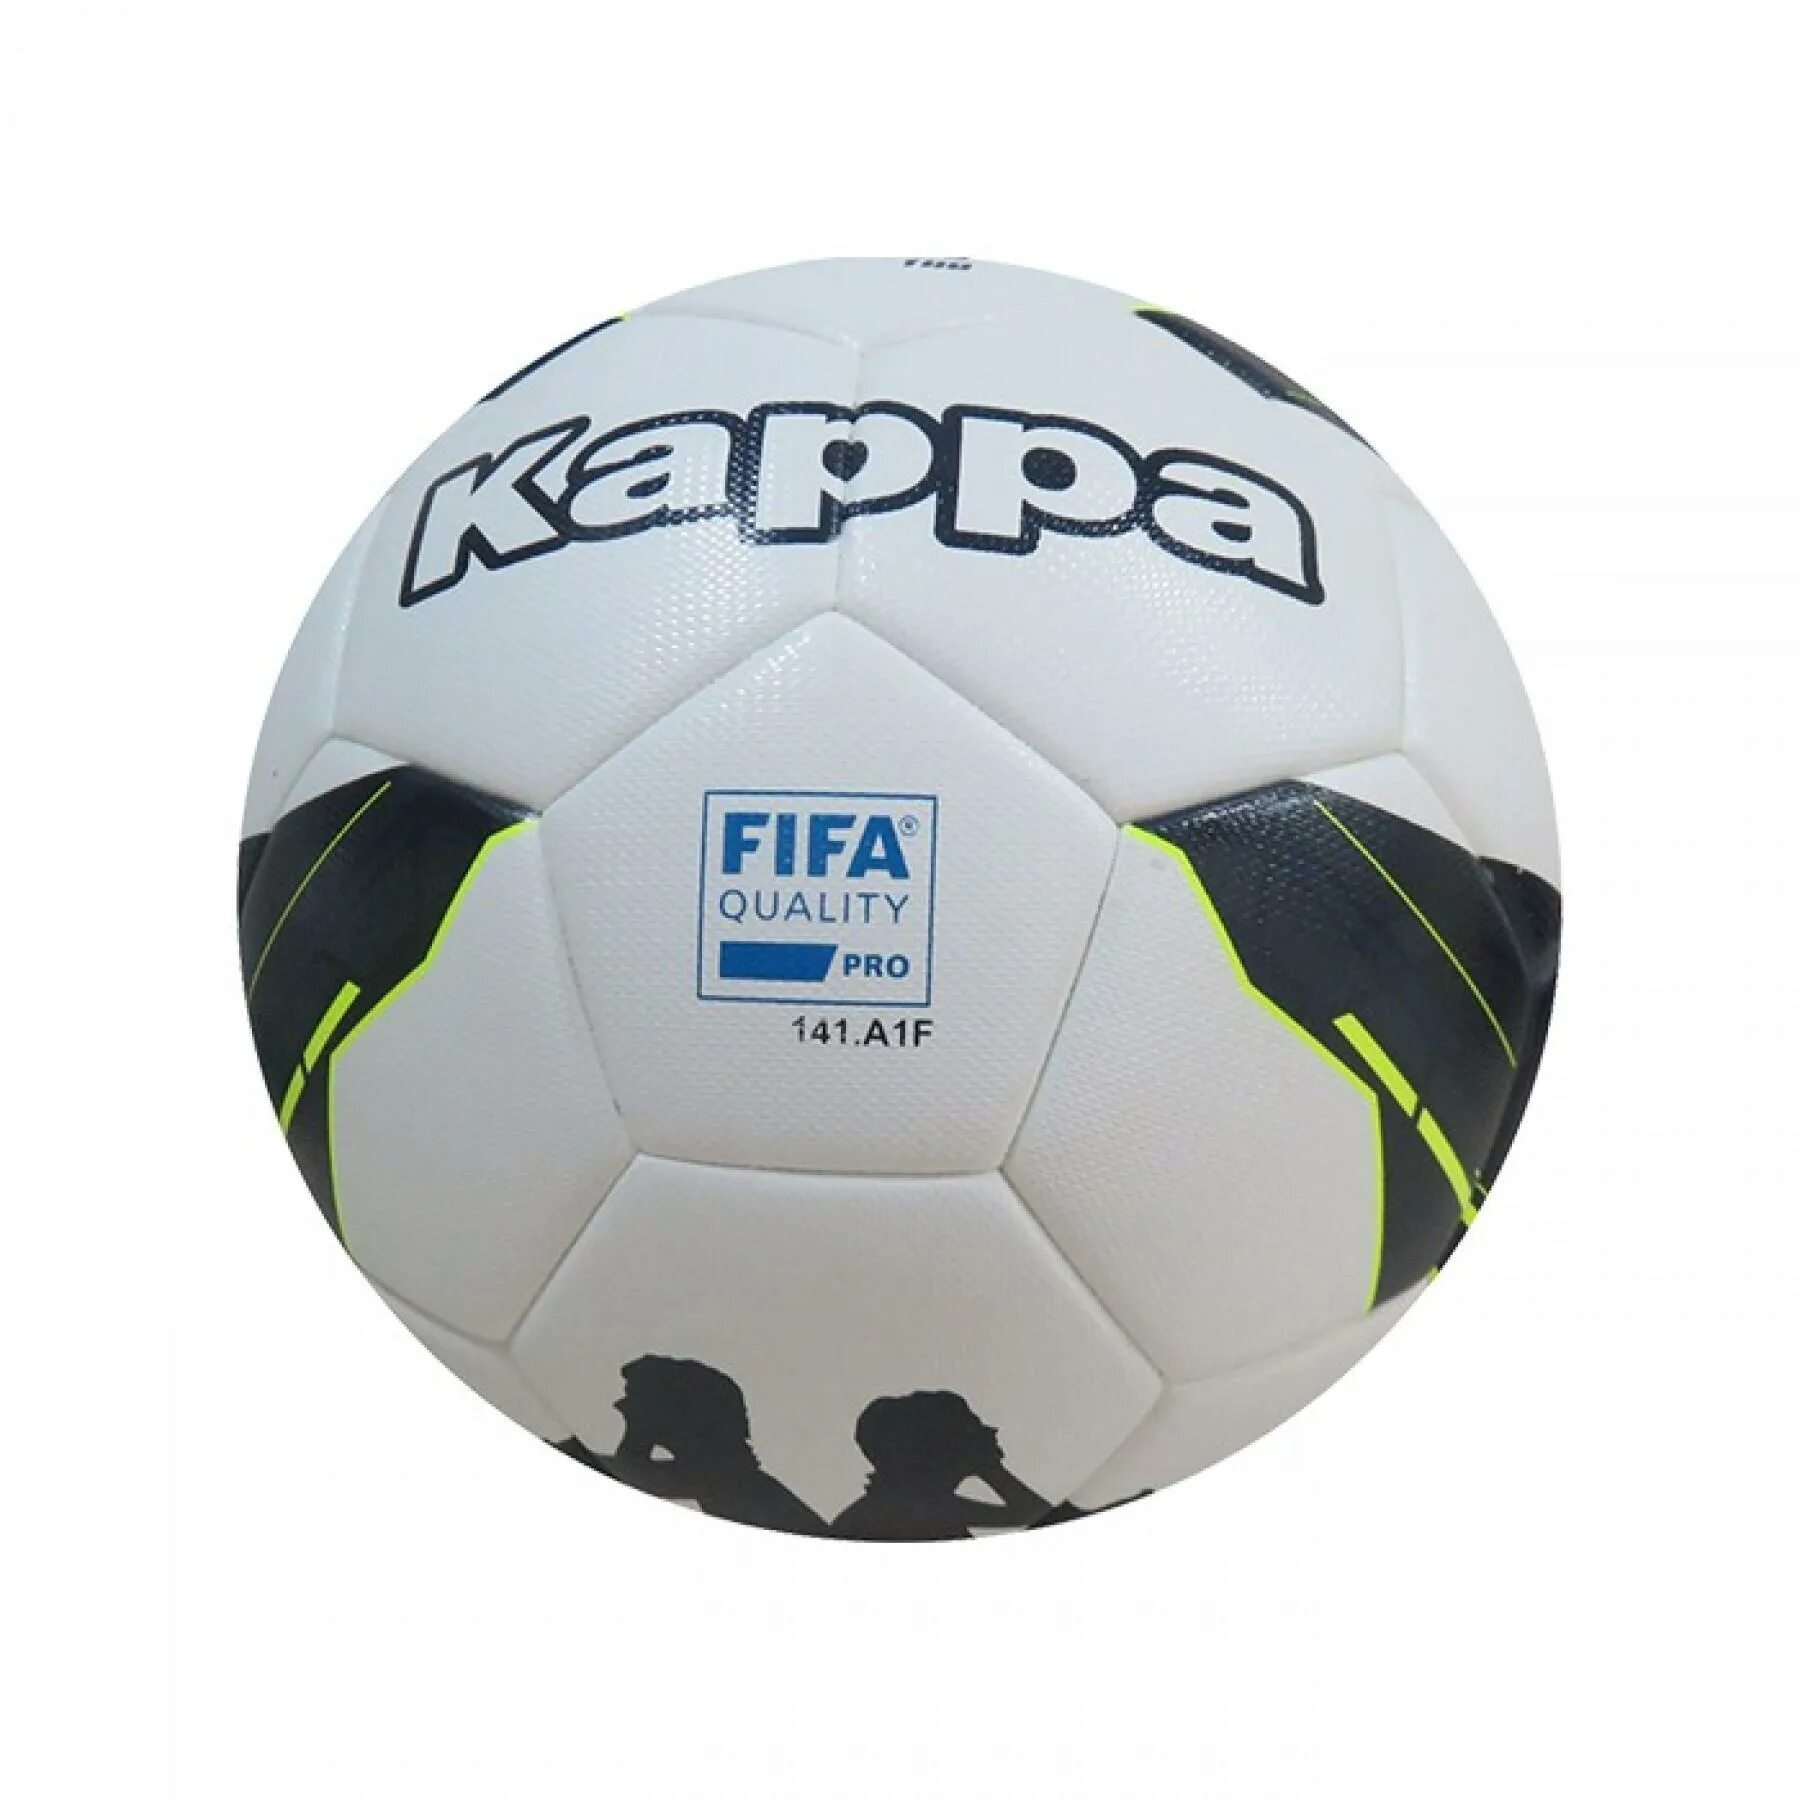 Футбольный мяч fifa quality pro. 1006226 Мяч Каппа. Мяч adidas FIFA quality Pro 202.f5y цена. Мяч ФИФА код 1006226 Каппа.